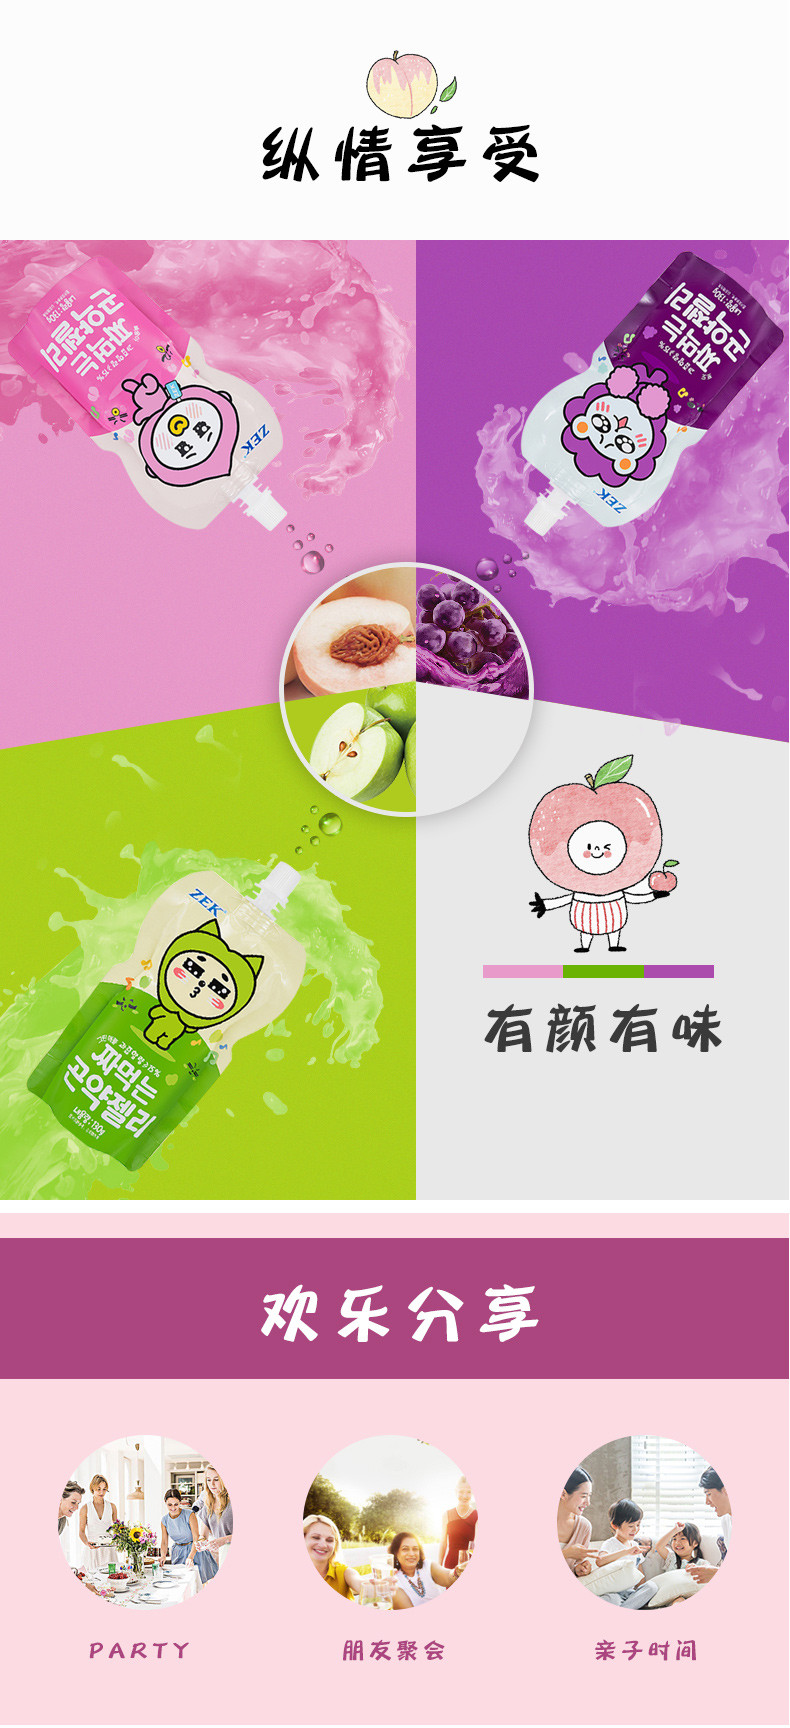 马来西亚进口食品zek蒟蒻果冻130g*3袋葡萄/白桃/苹果汁儿童吸吸果冻零食魔芋果冻水果汁零食